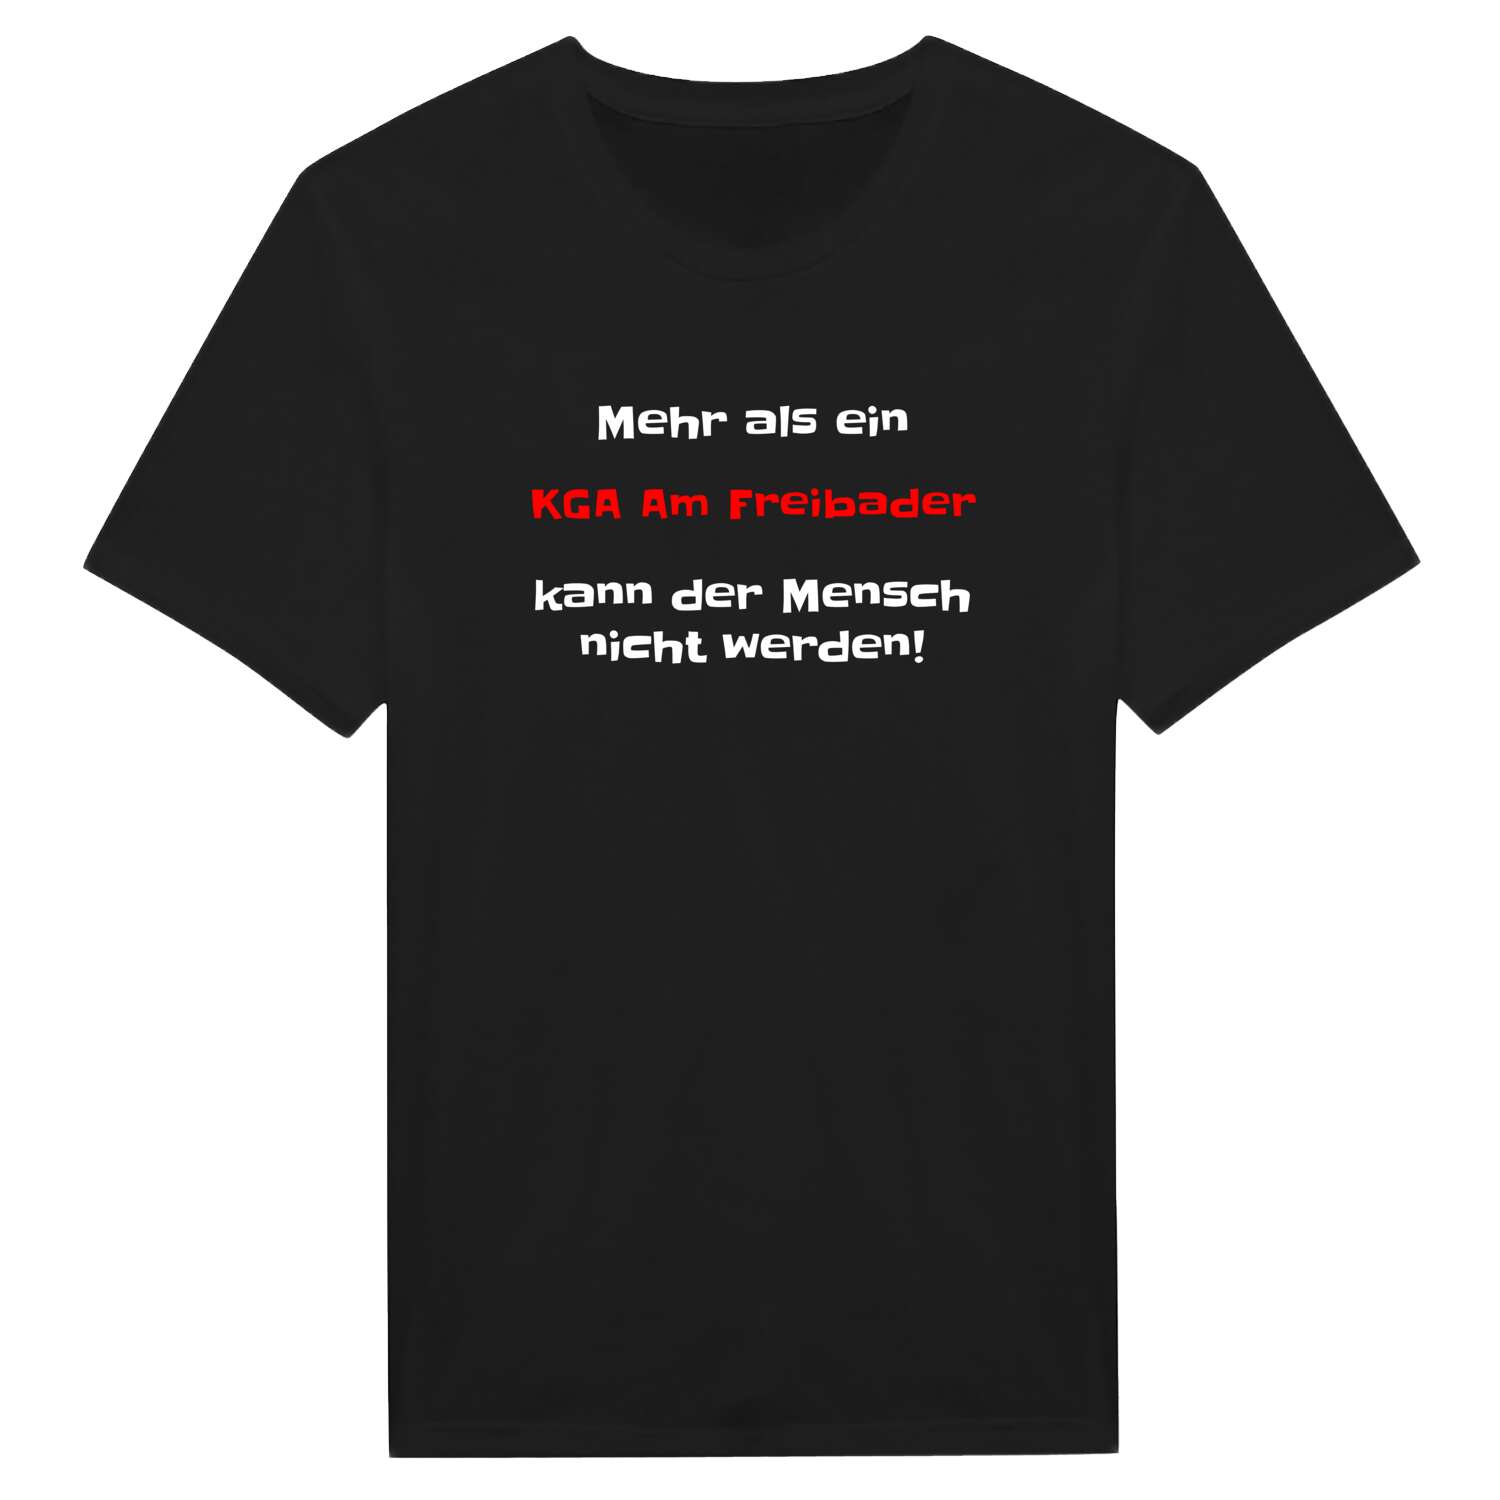 KGA Am Freibad T-Shirt »Mehr als ein«